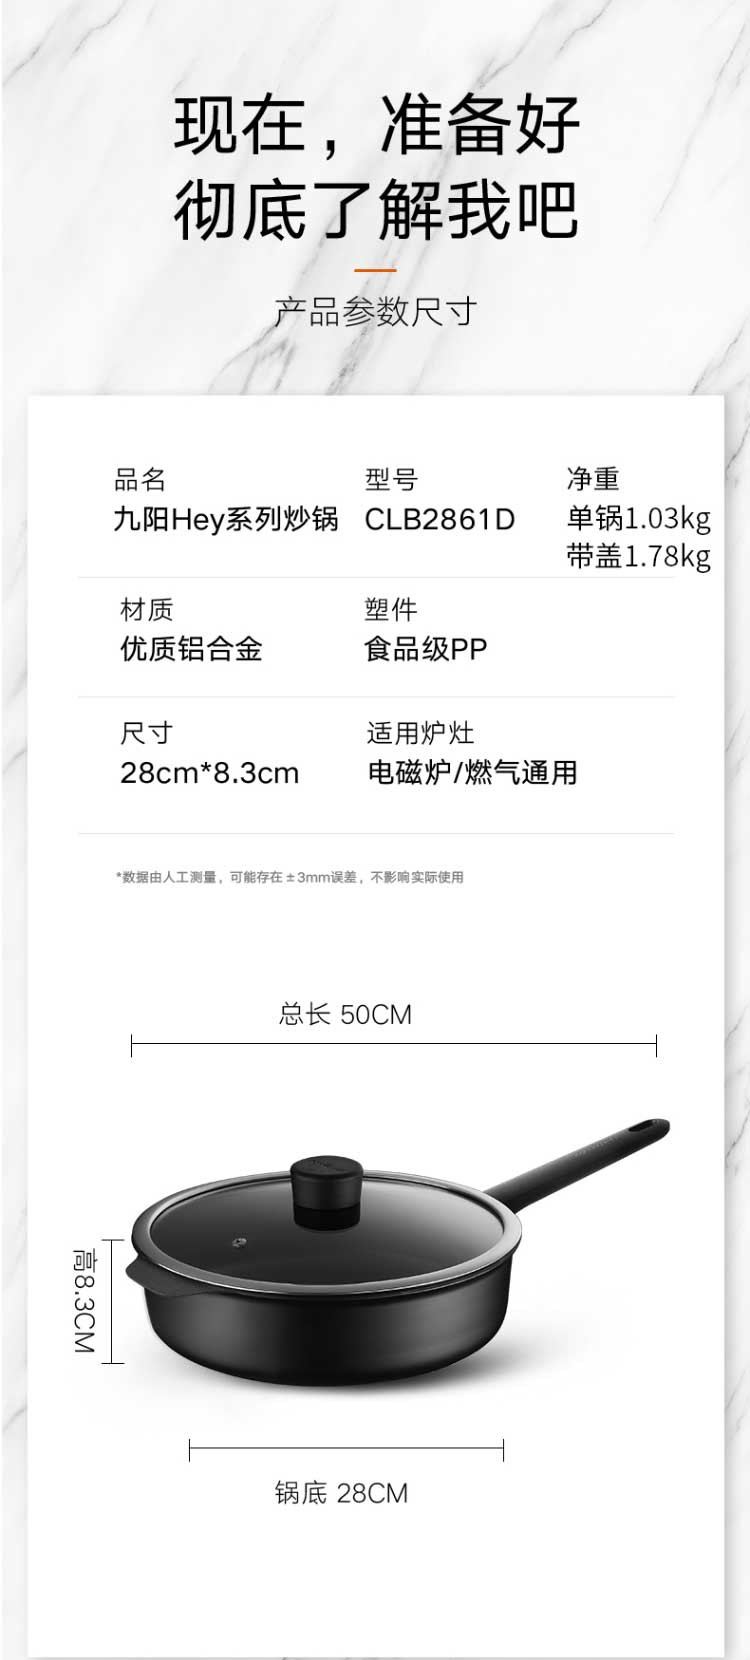 九阳/Joyoung   不粘煎锅炒锅  CLB2861D-B  28cm